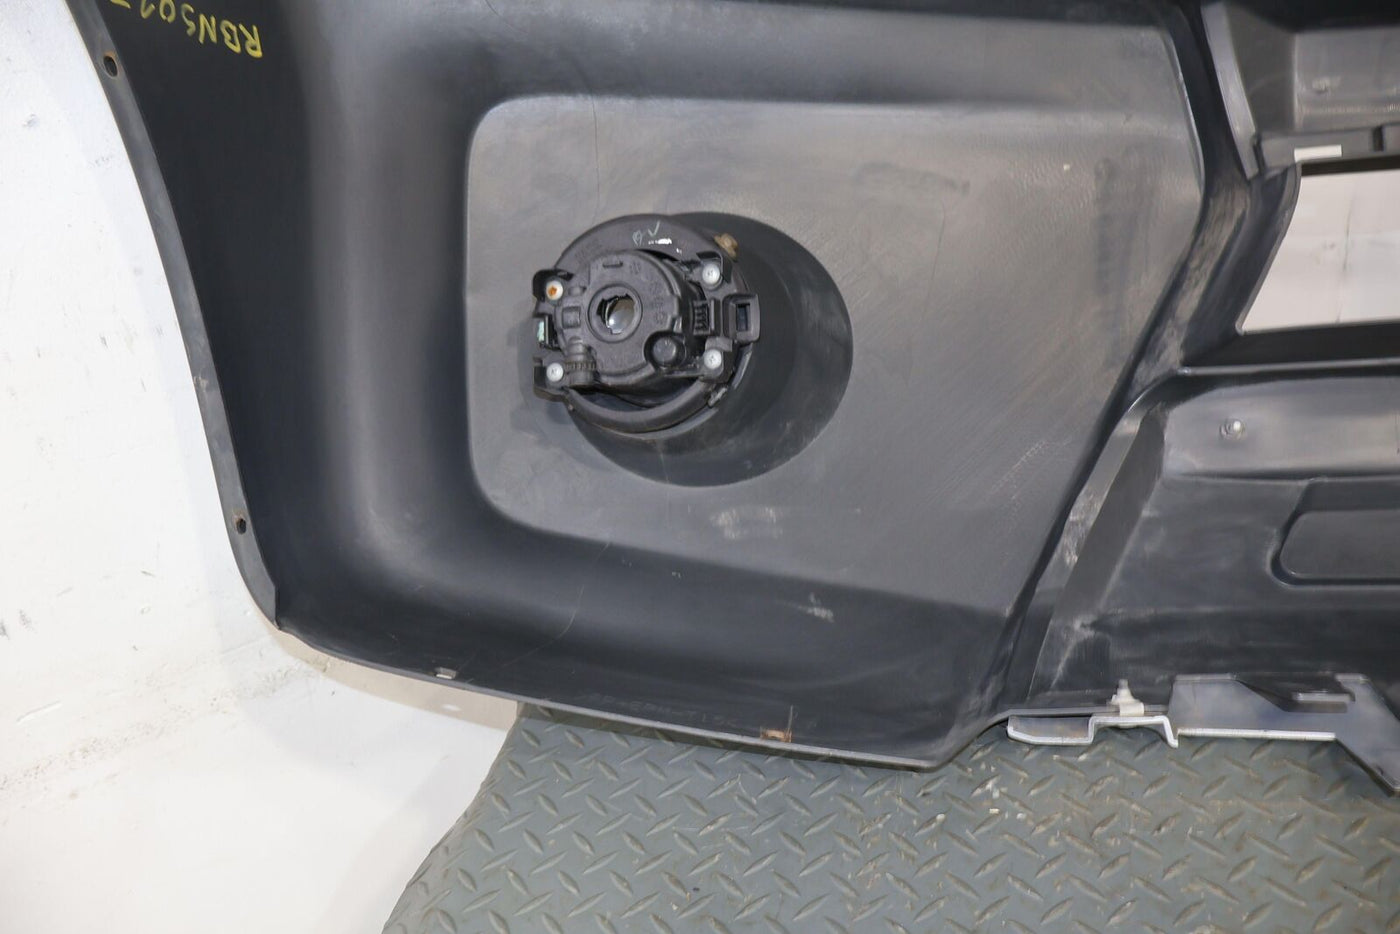 09-15 Nissan Xterra Front OEM Bumper W/ Fog Lights(Silver / Black) NO Grille